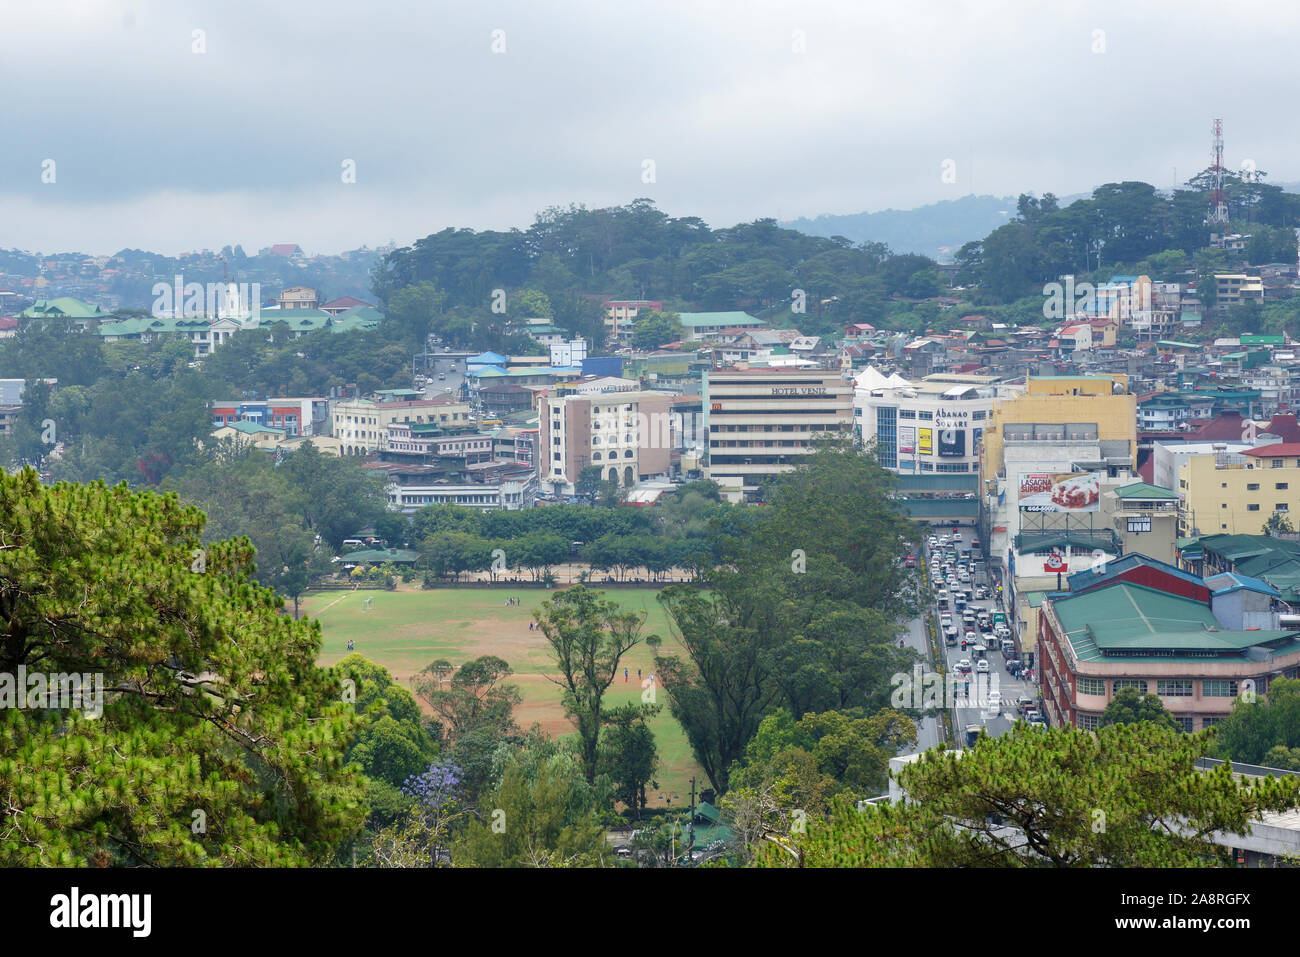 Una città con vista verde su un'area montana nelle Filippine, Sud-est asiatico. Photo taken in Baguio City, Philippines on April 21, 2014. Foto Stock